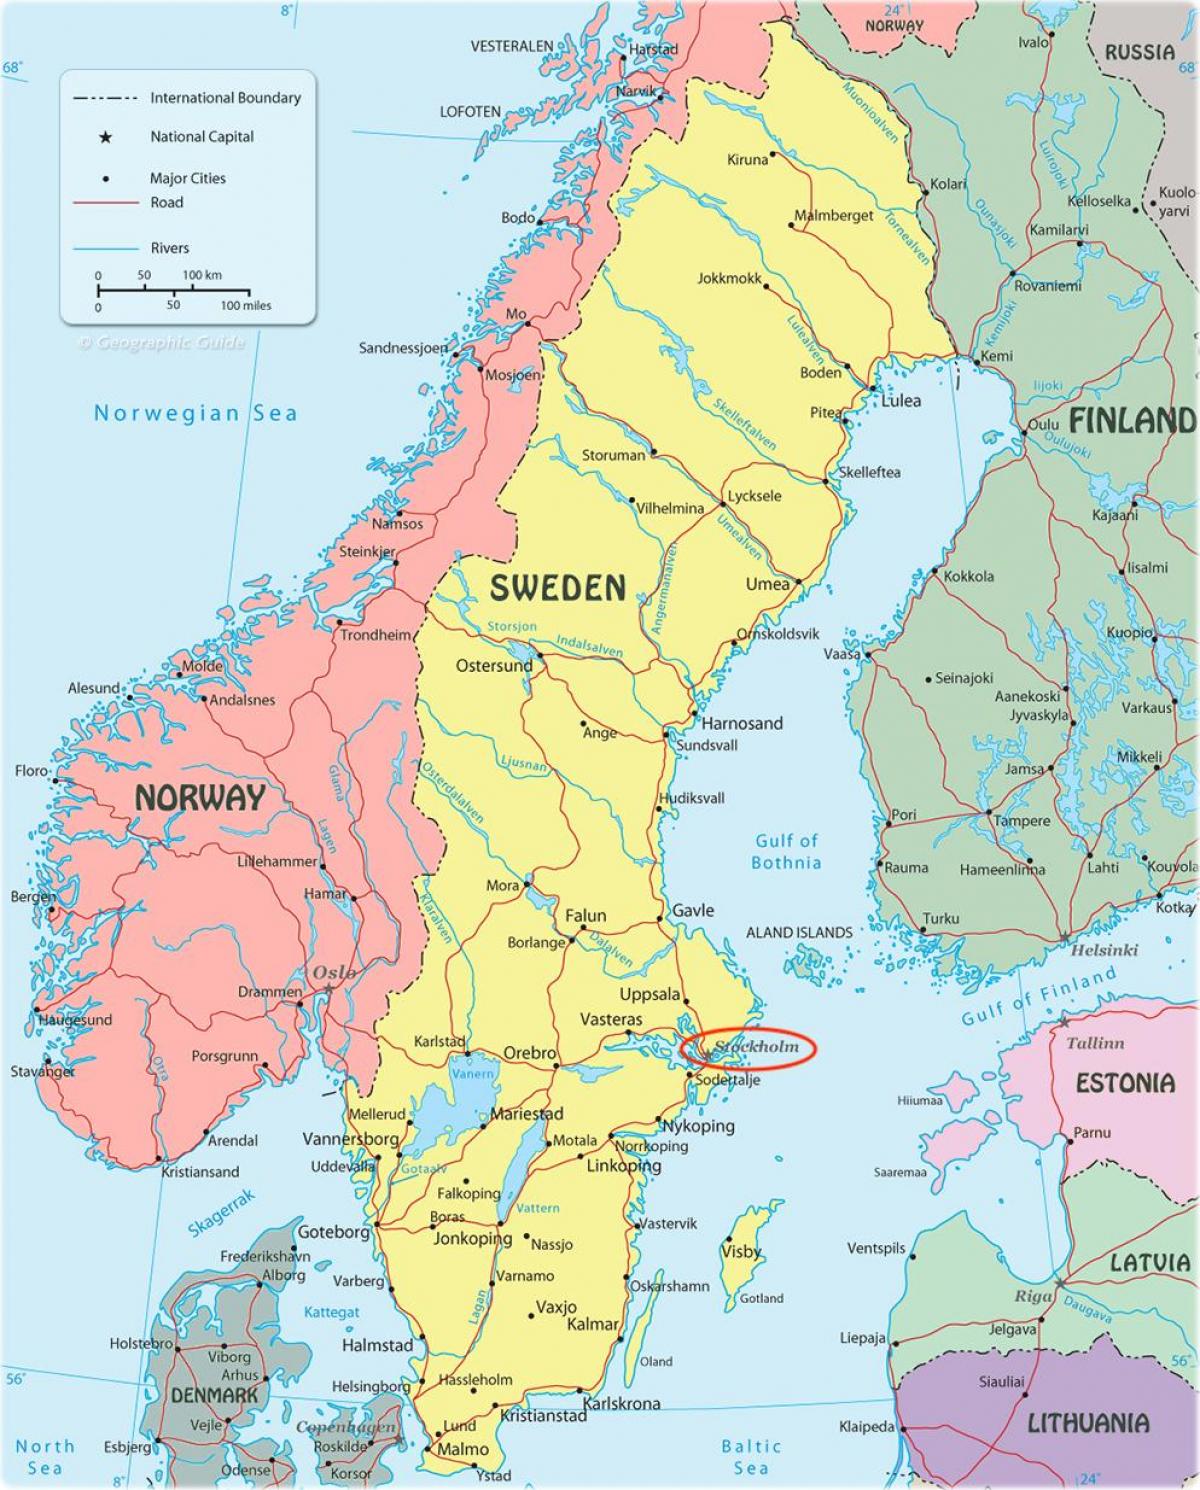 スウェーデンのストックホルムの地図